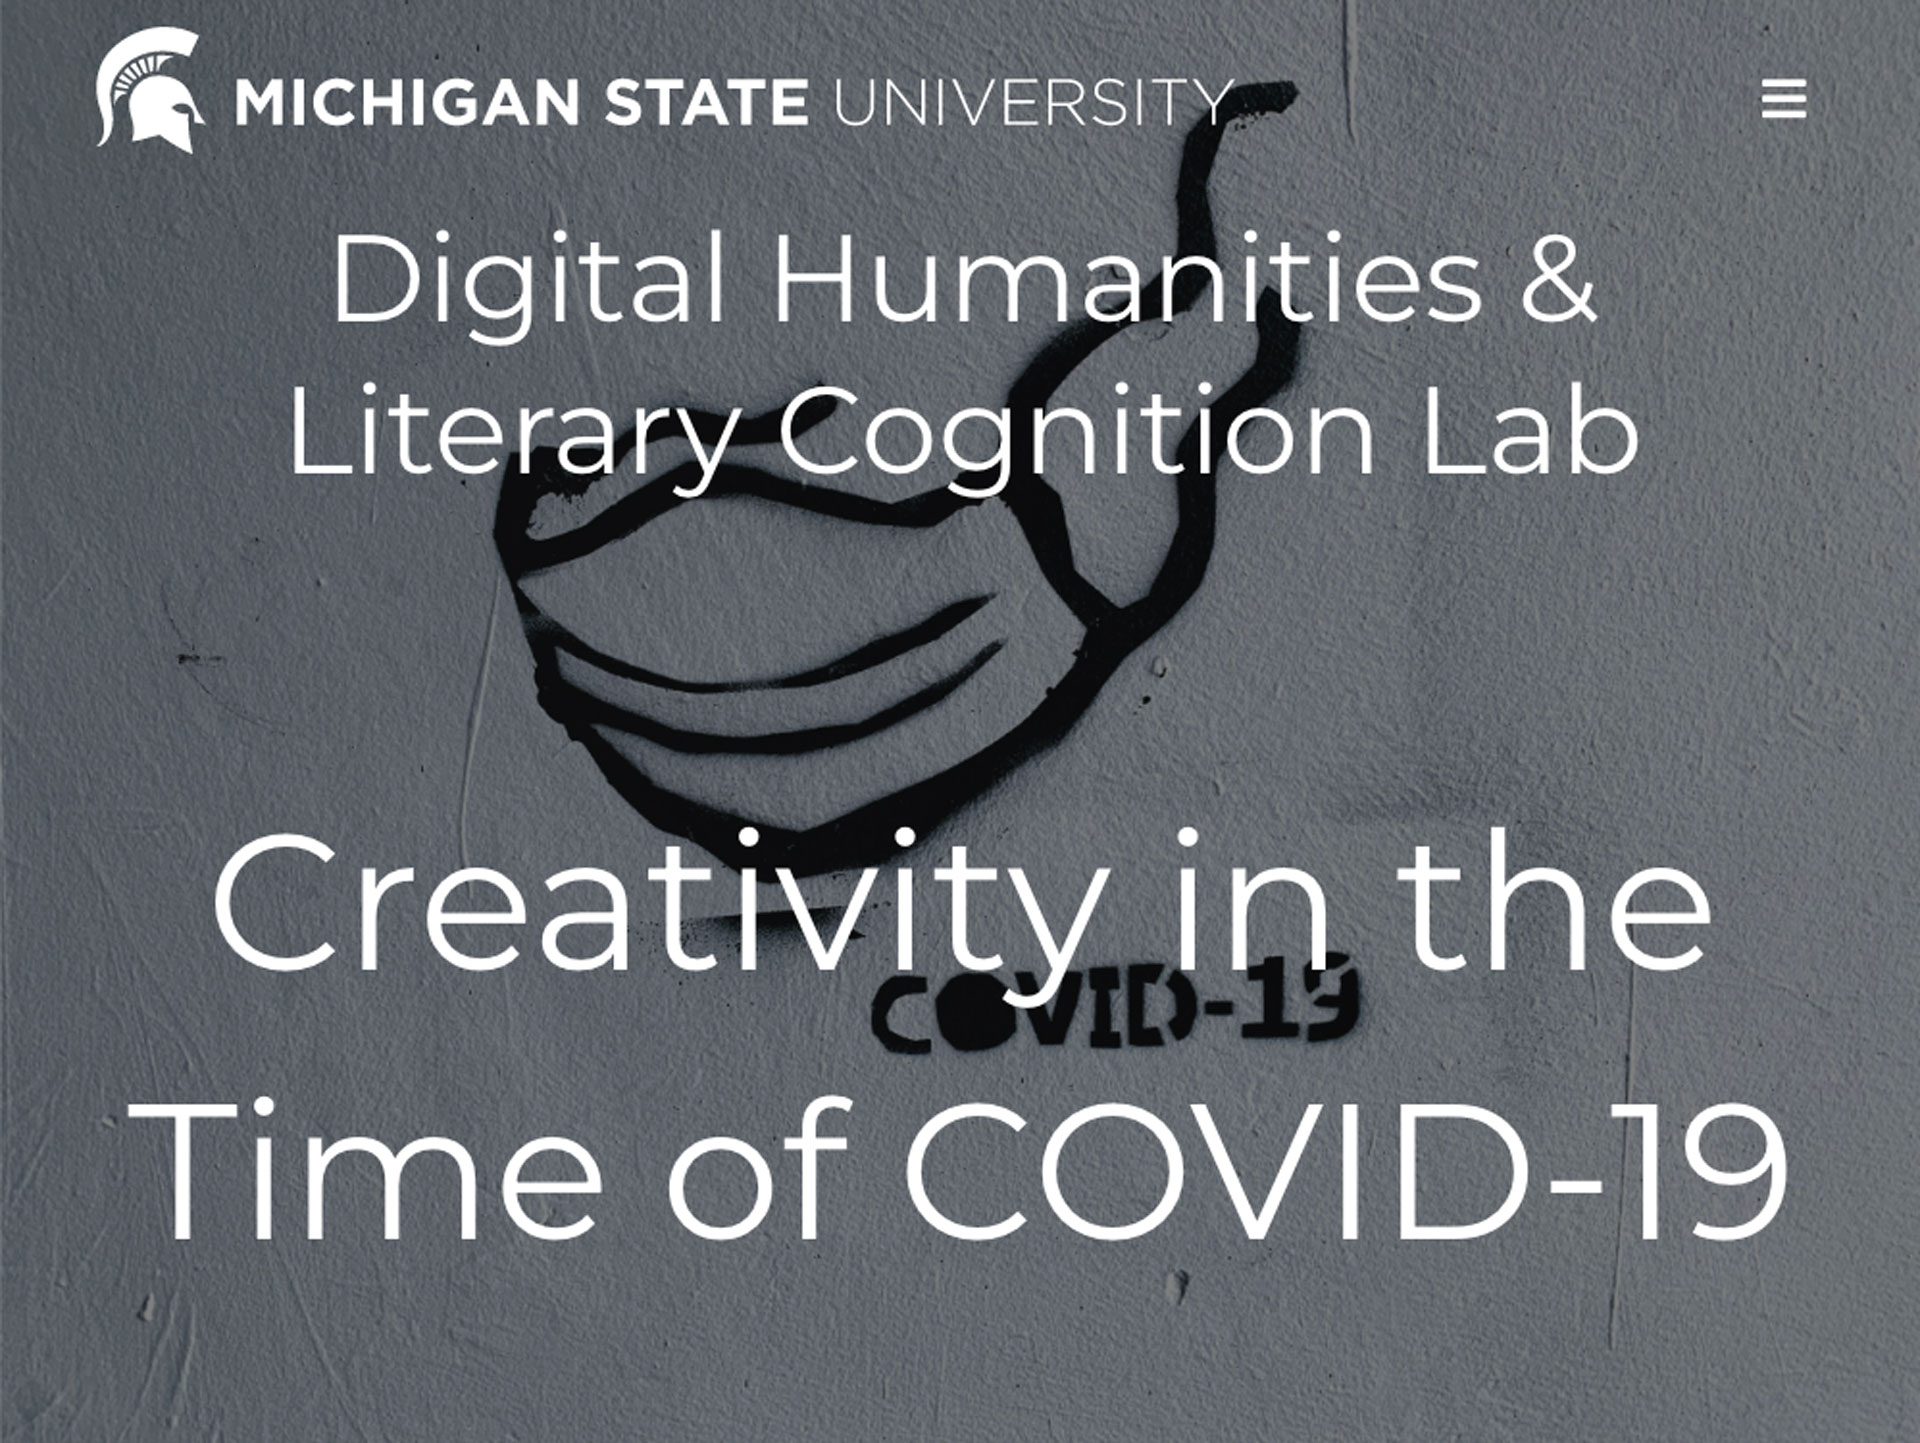 Convocatoria-creatividad-en-tiempos-de-COVID-19-de-Michigan-State-University